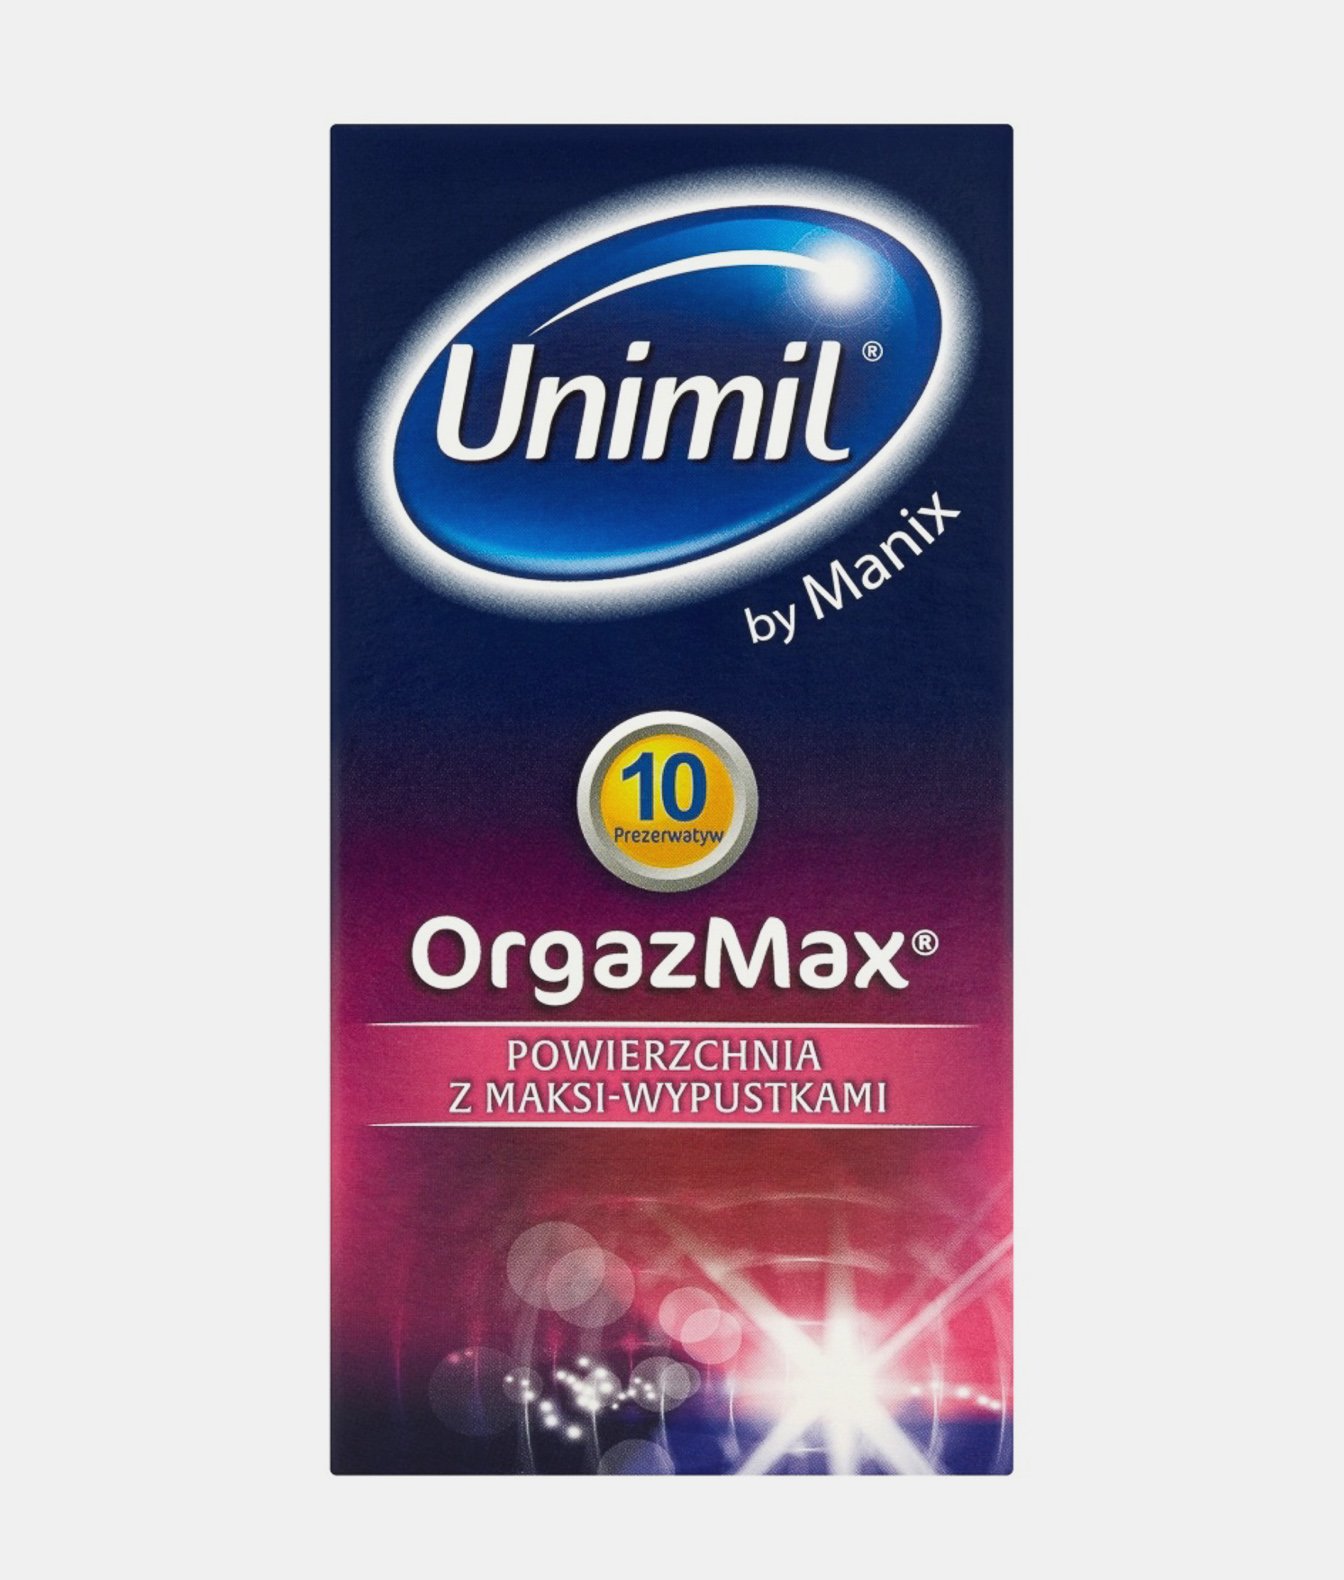 Unimi box 10 orgazmax Prezerwatywy 10 szt